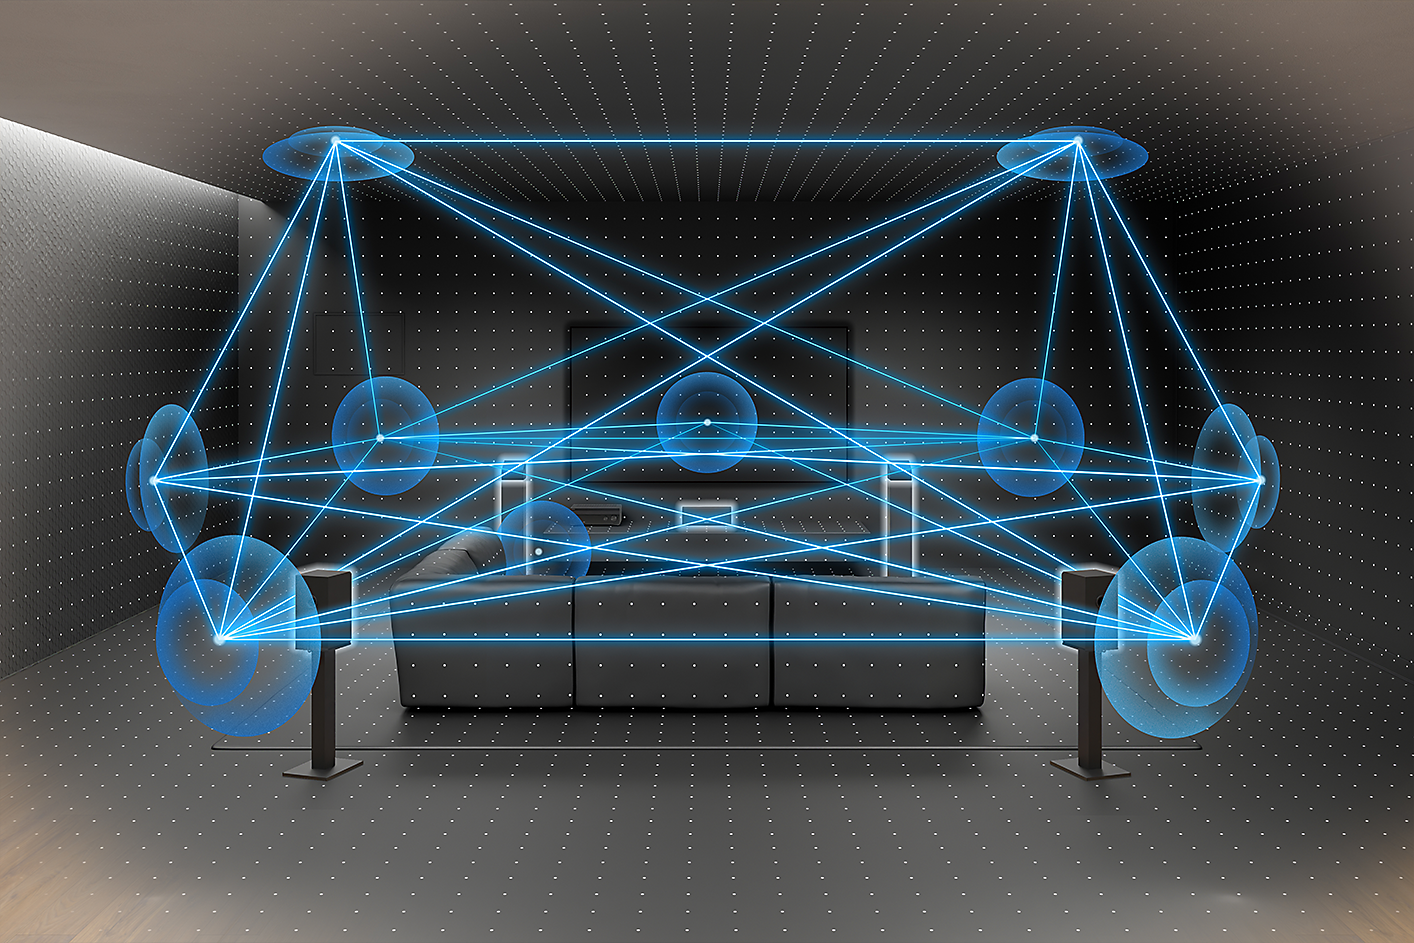 Slika sobe s kaučem, televizorom i zvučnicima. Višestruke linije i krugovi prikazuju kretanje zvuka